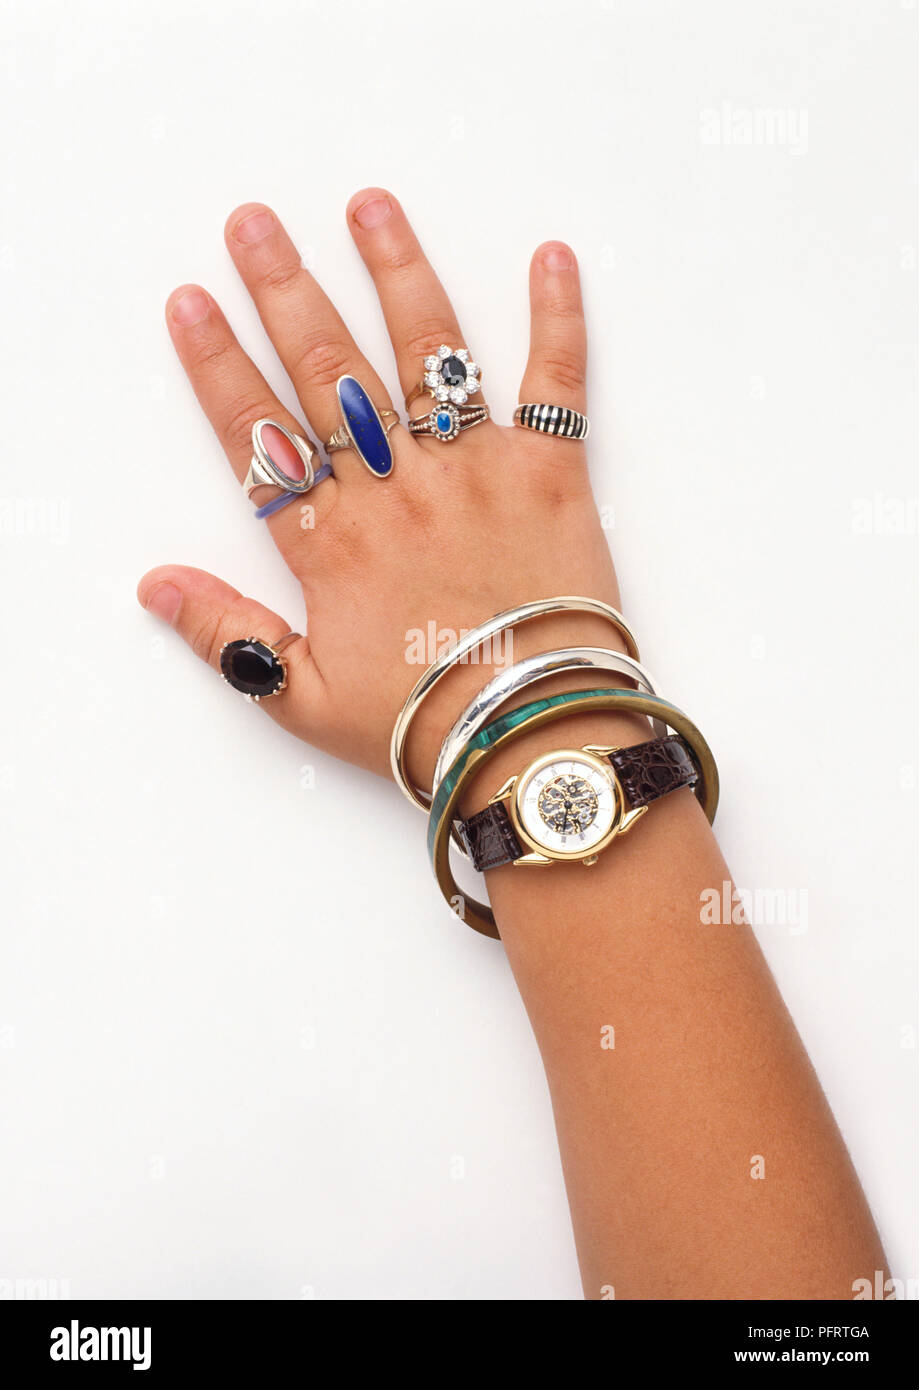 Main de la jeune fille portant un grand nombre de bagues, bracelets et une  montre Photo Stock - Alamy